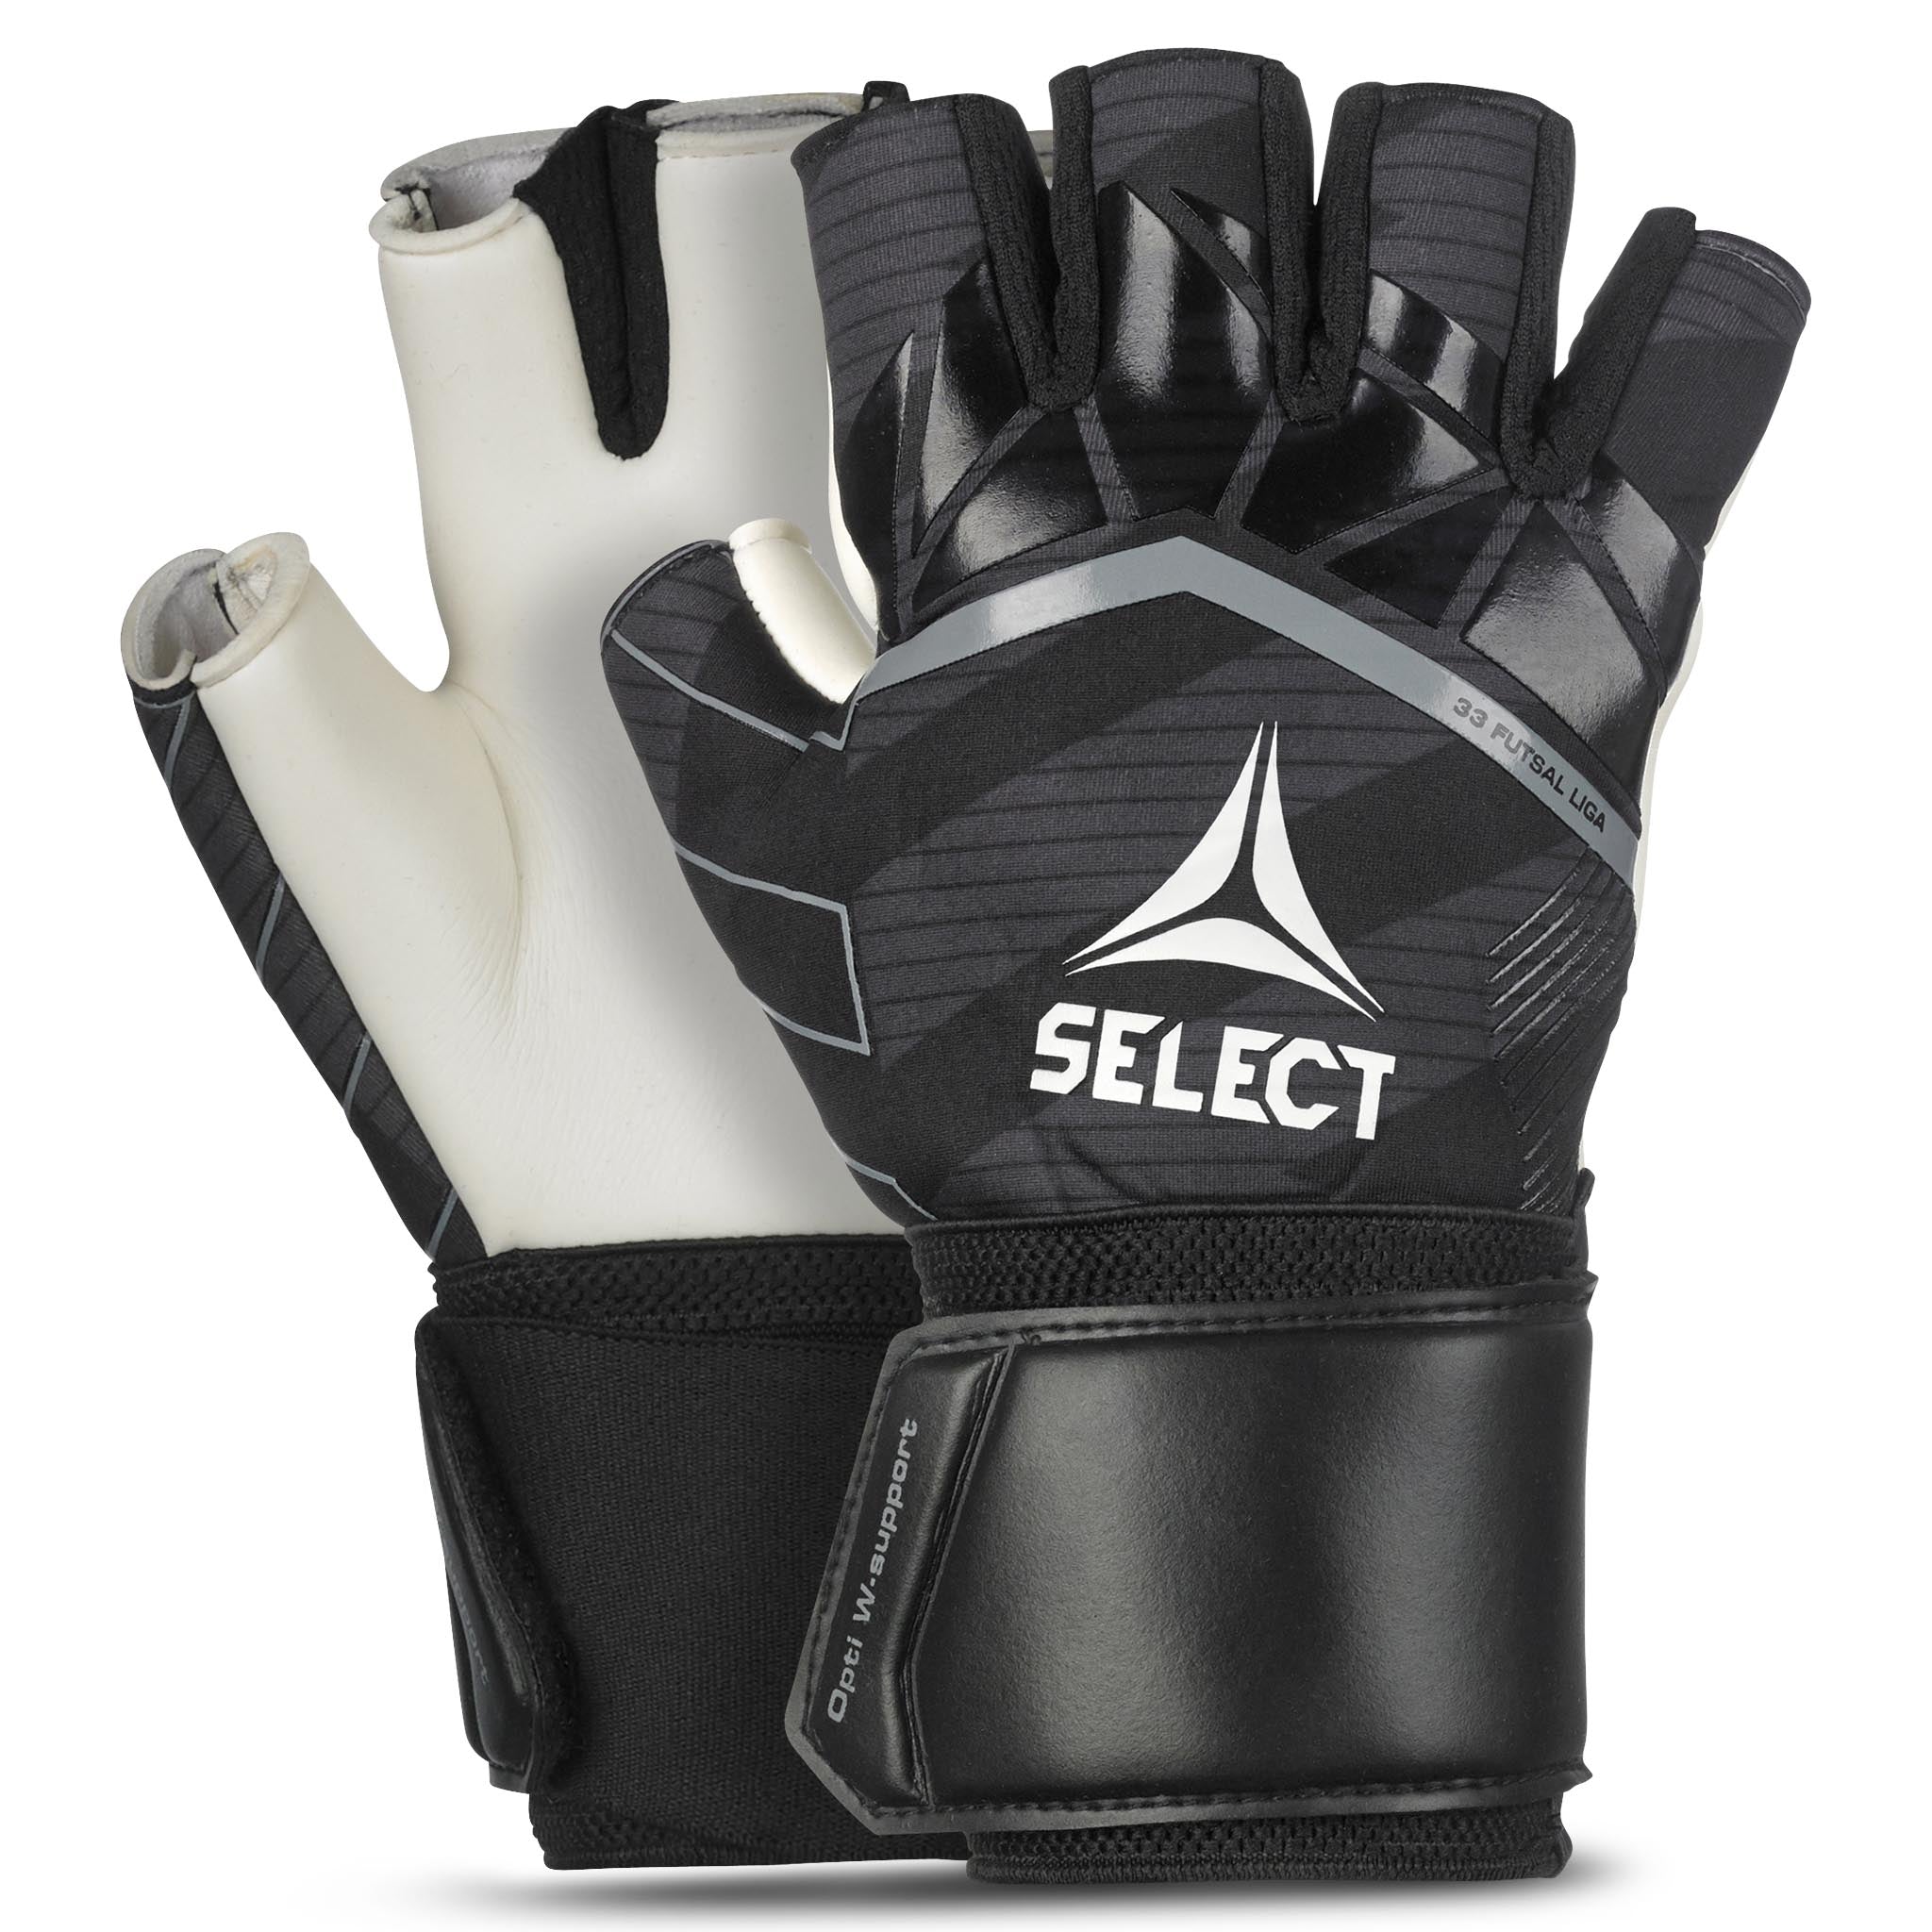 Goalkeeper gloves - Futsal Liga #colour_black/white